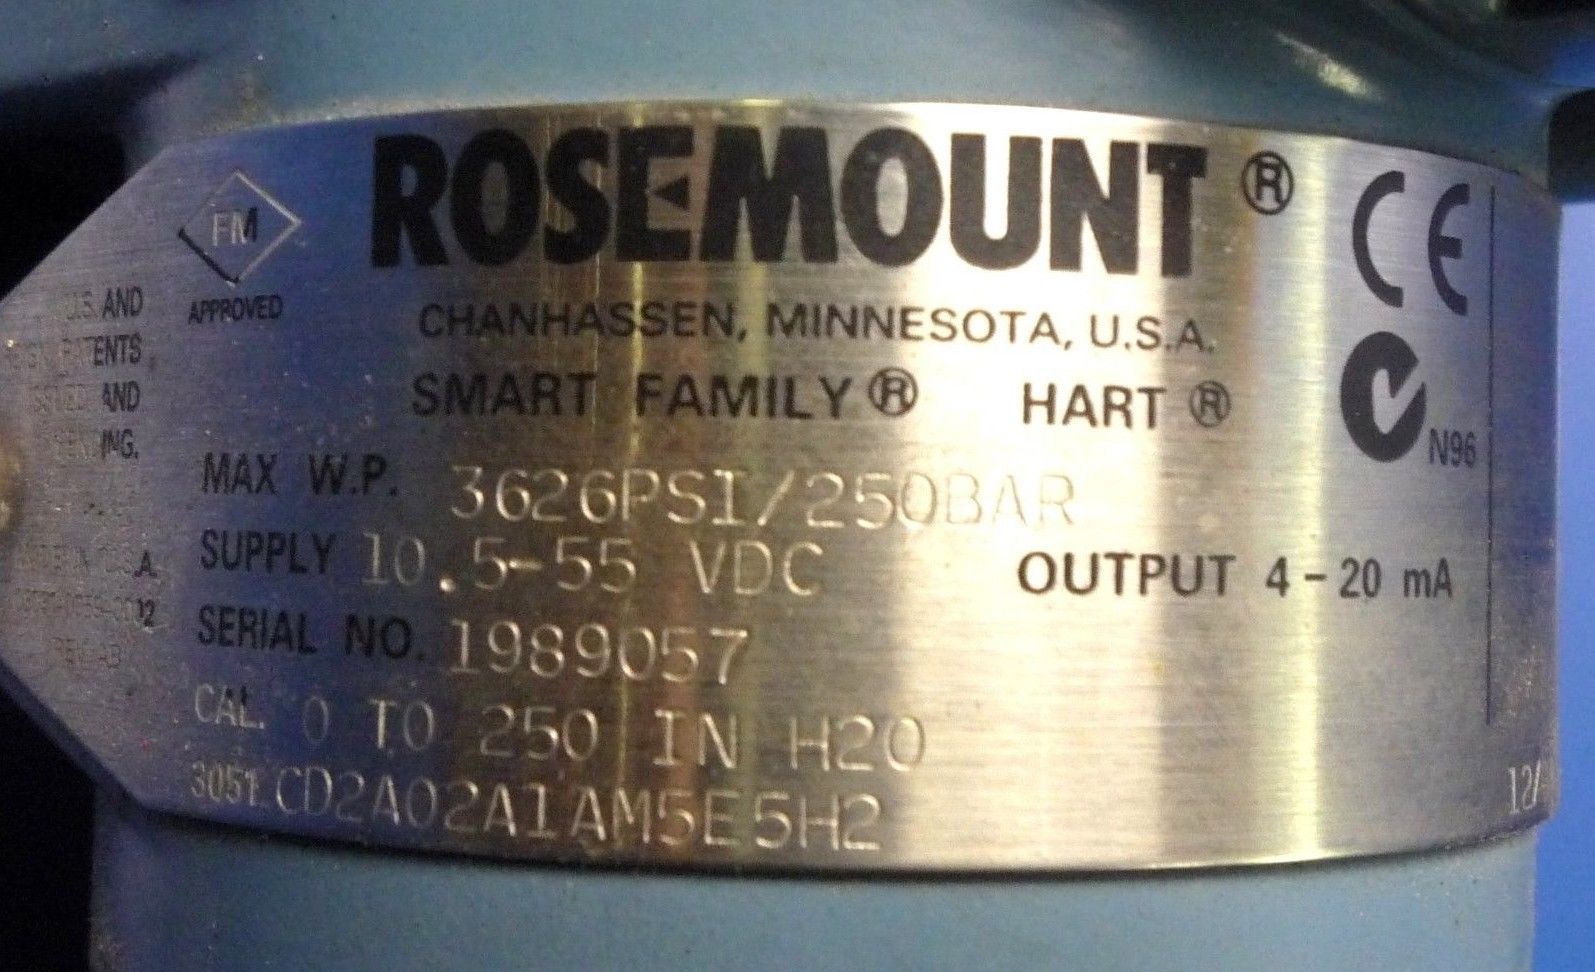 Rosemount Transmitter/Transducer 3051CD2A02A1AM5E5H2